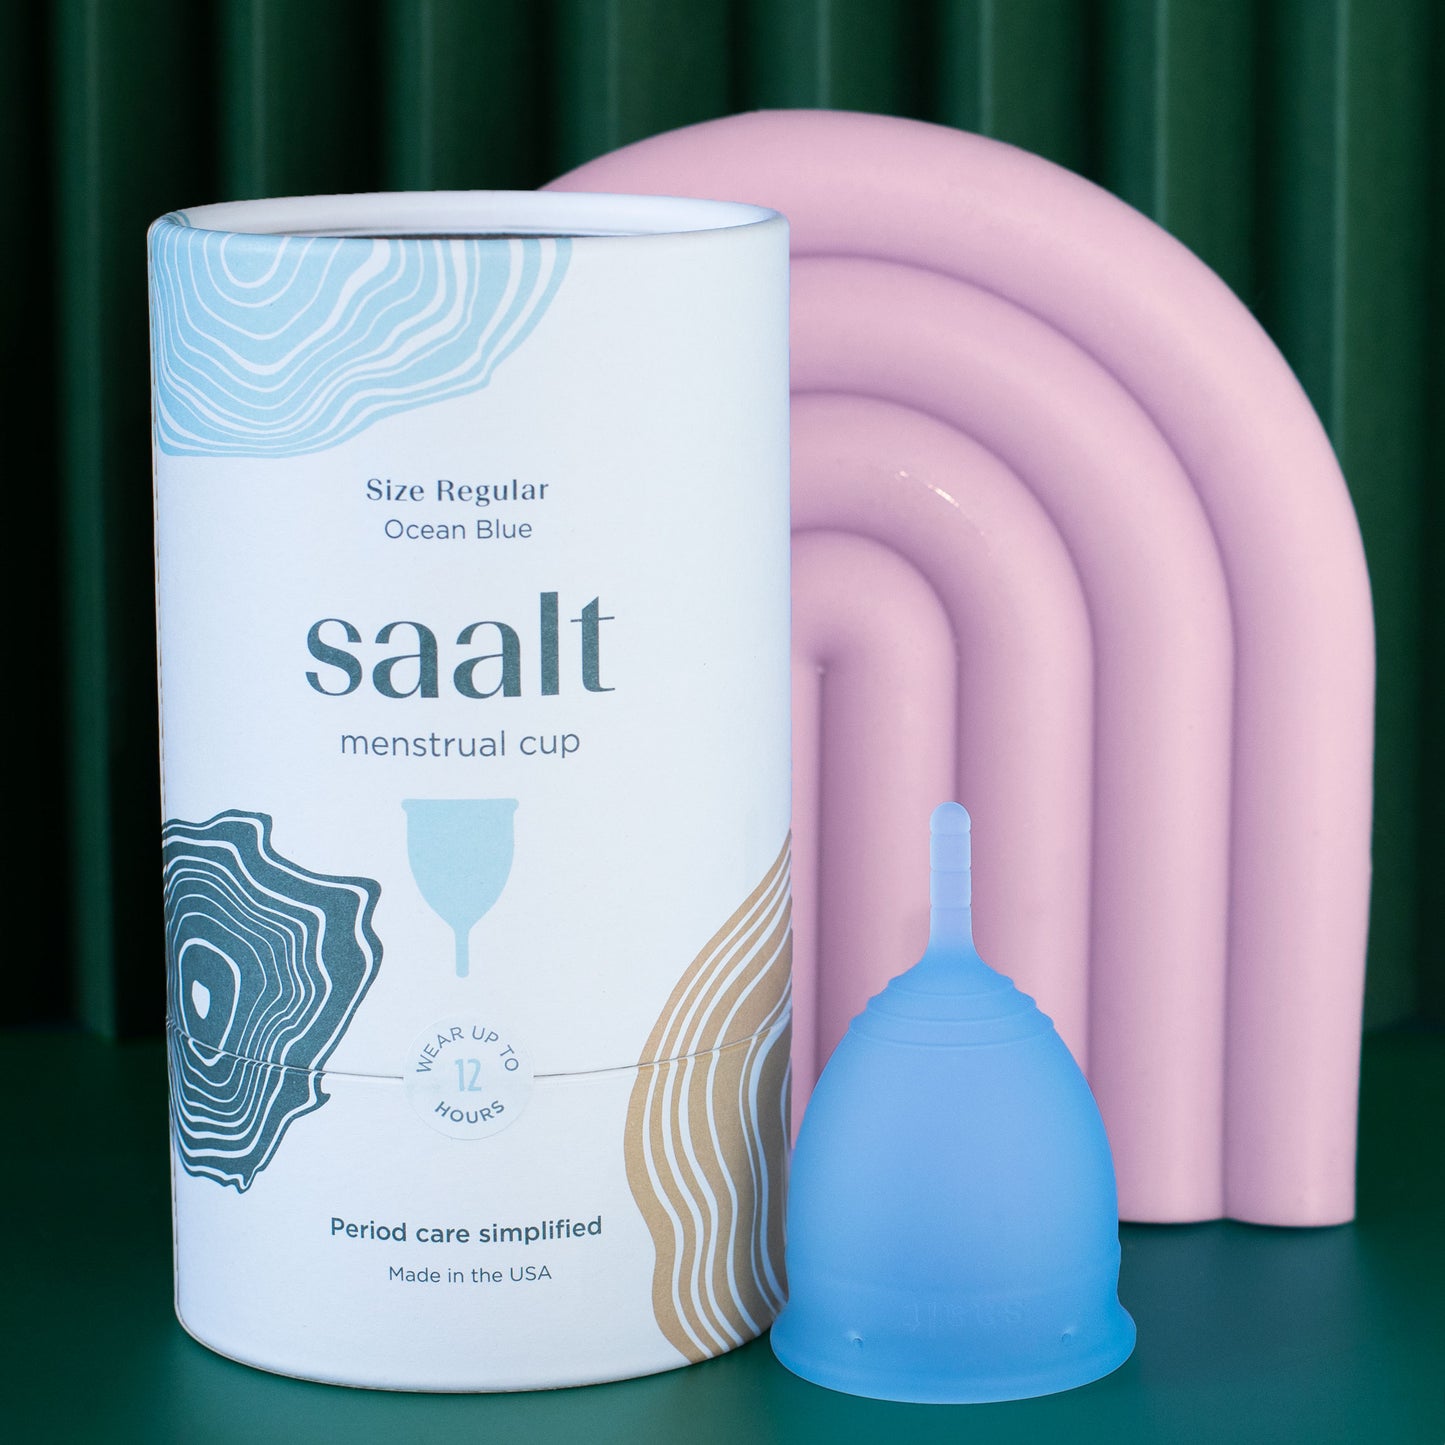 Saalt Regular in Ocean Blue with packaging